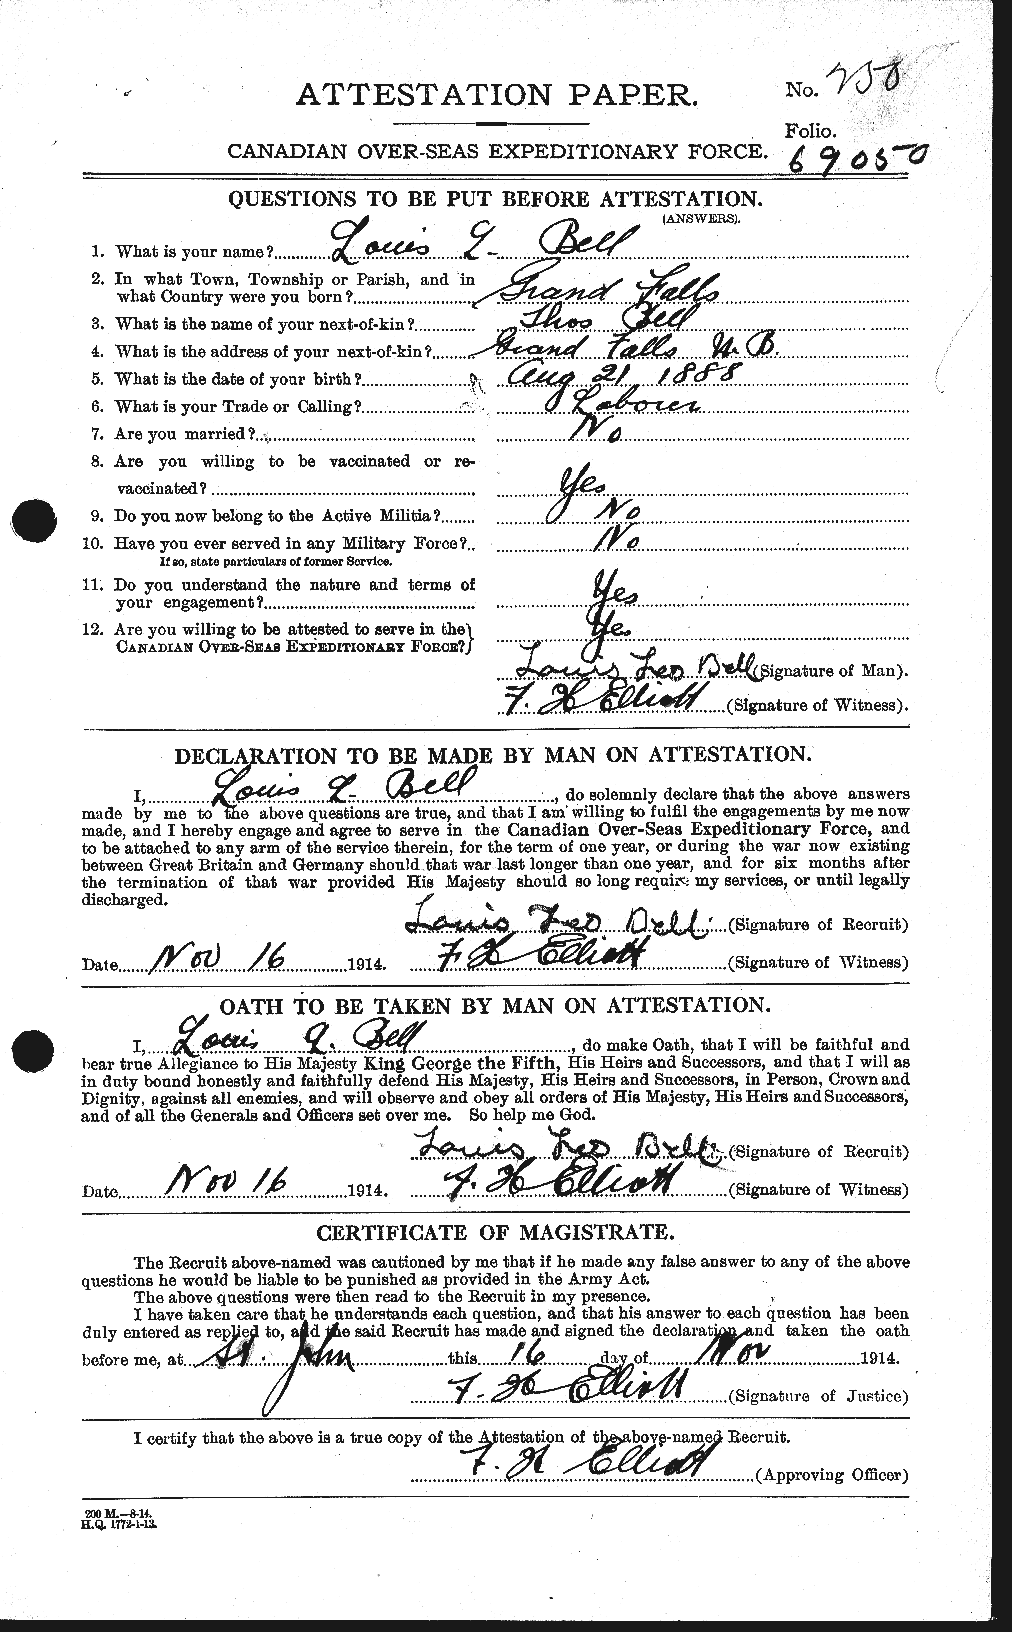 Dossiers du Personnel de la Première Guerre mondiale - CEC 234532a